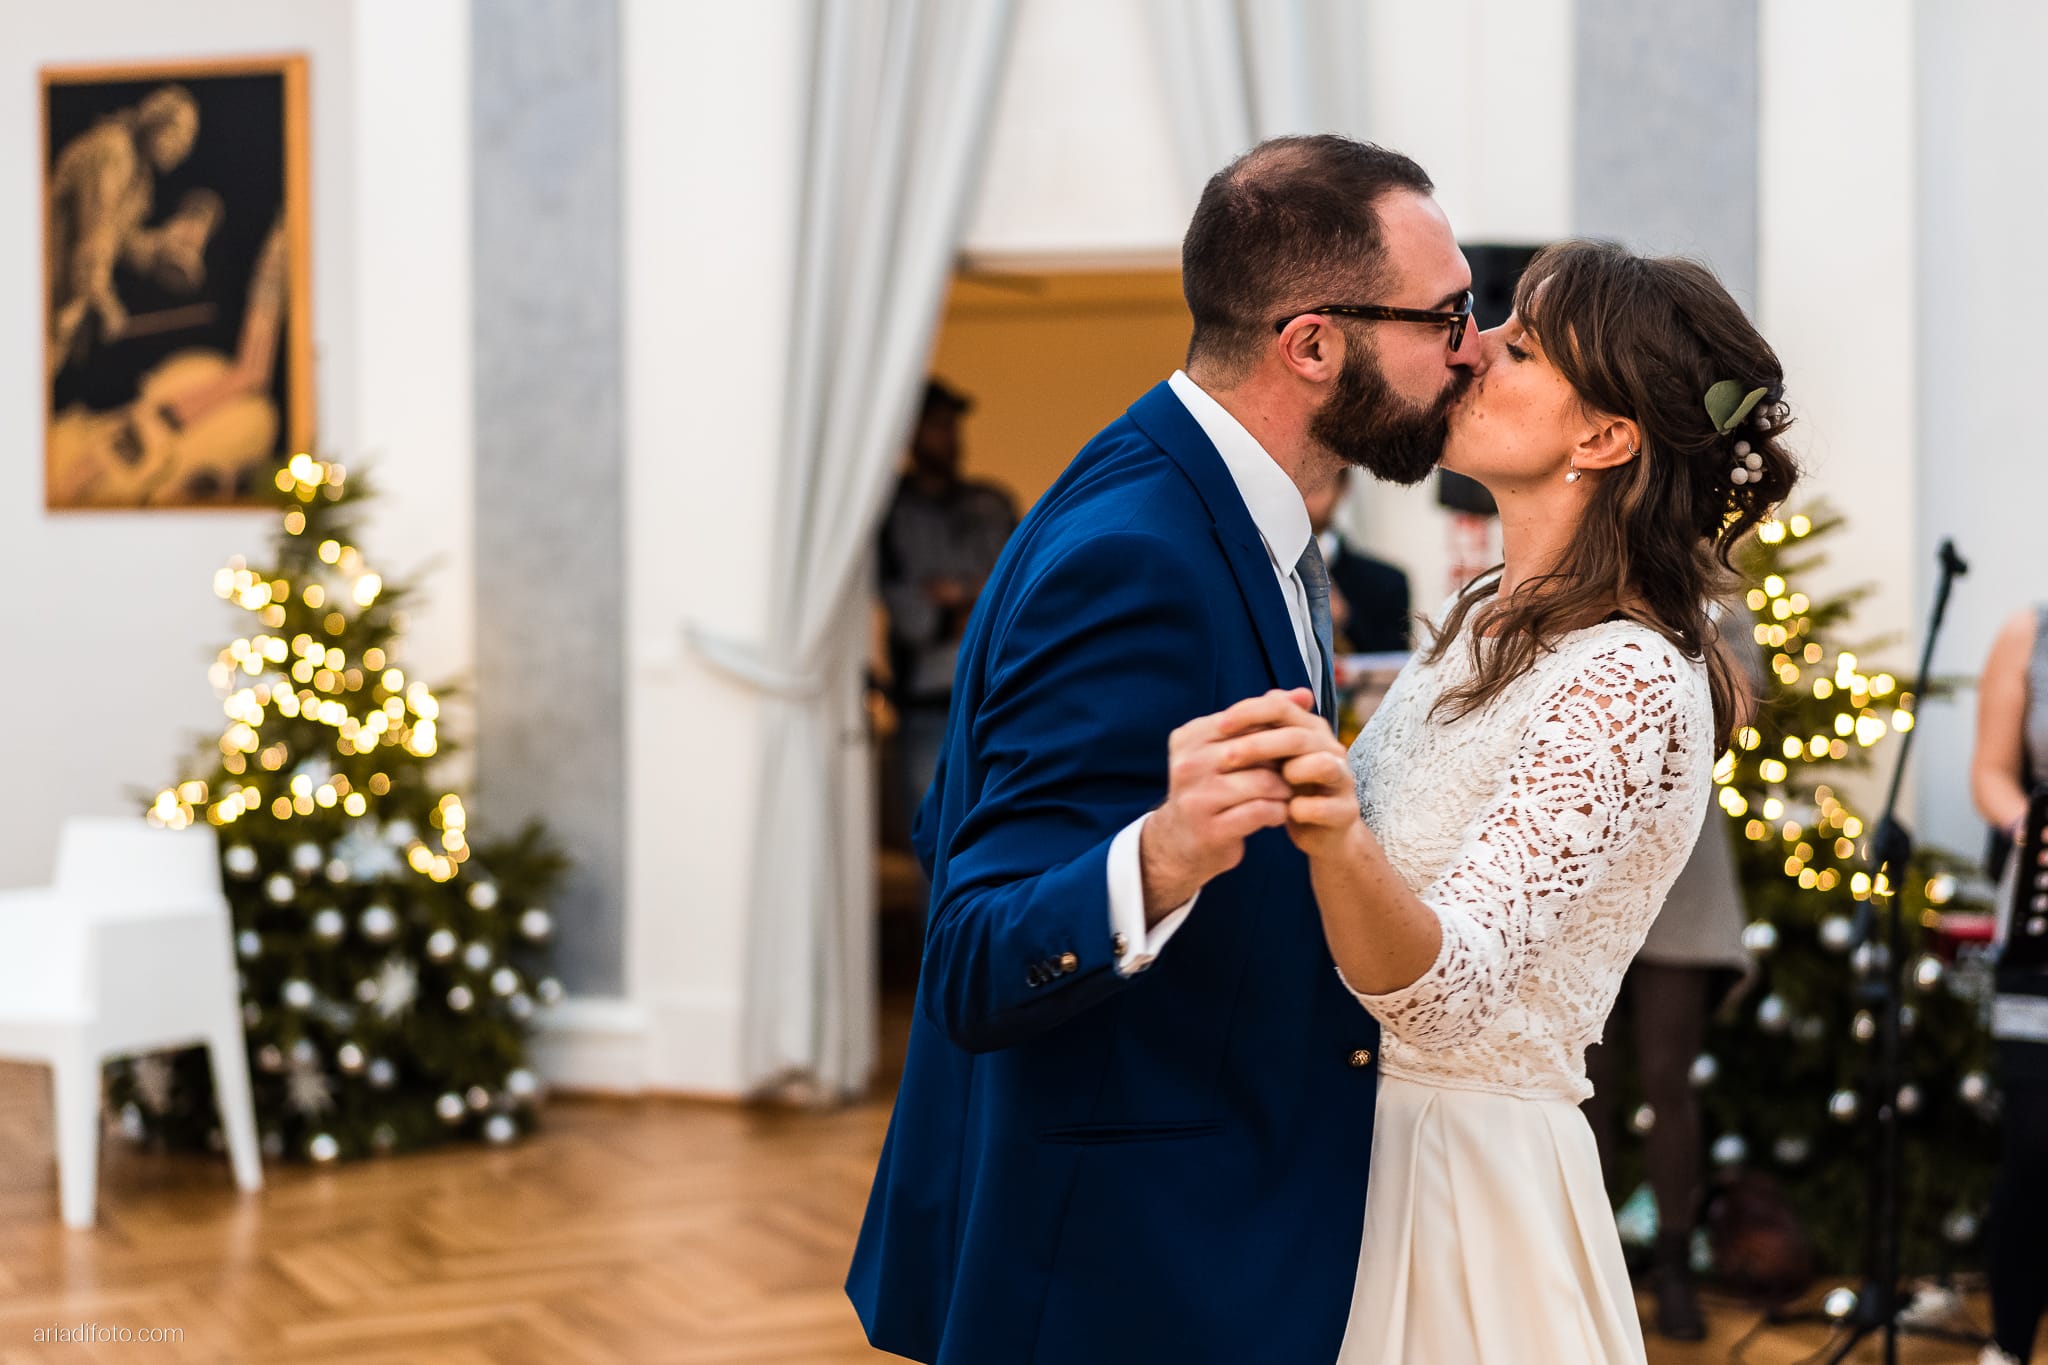 Margherita Giorgio Matrimonio Invernale Sala Piccola Fenice Trieste ricevimento primo ballo sposi